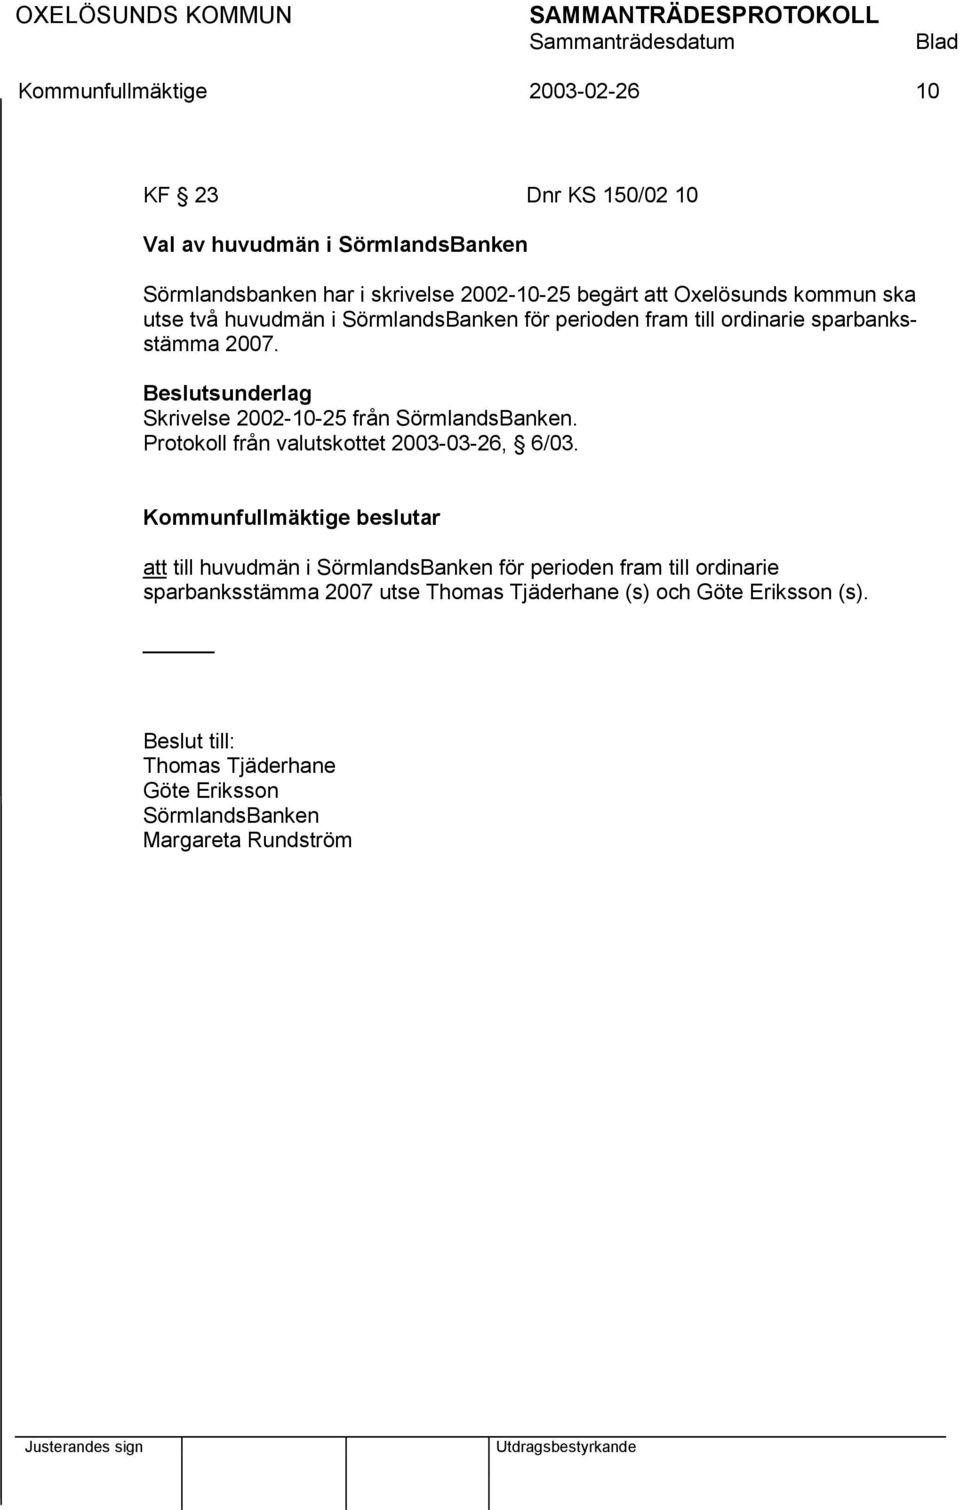 Beslutsunderlag Skrivelse 2002-10-25 från SörmlandsBanken. Protokoll från valutskottet 2003-03-26, 6/03.